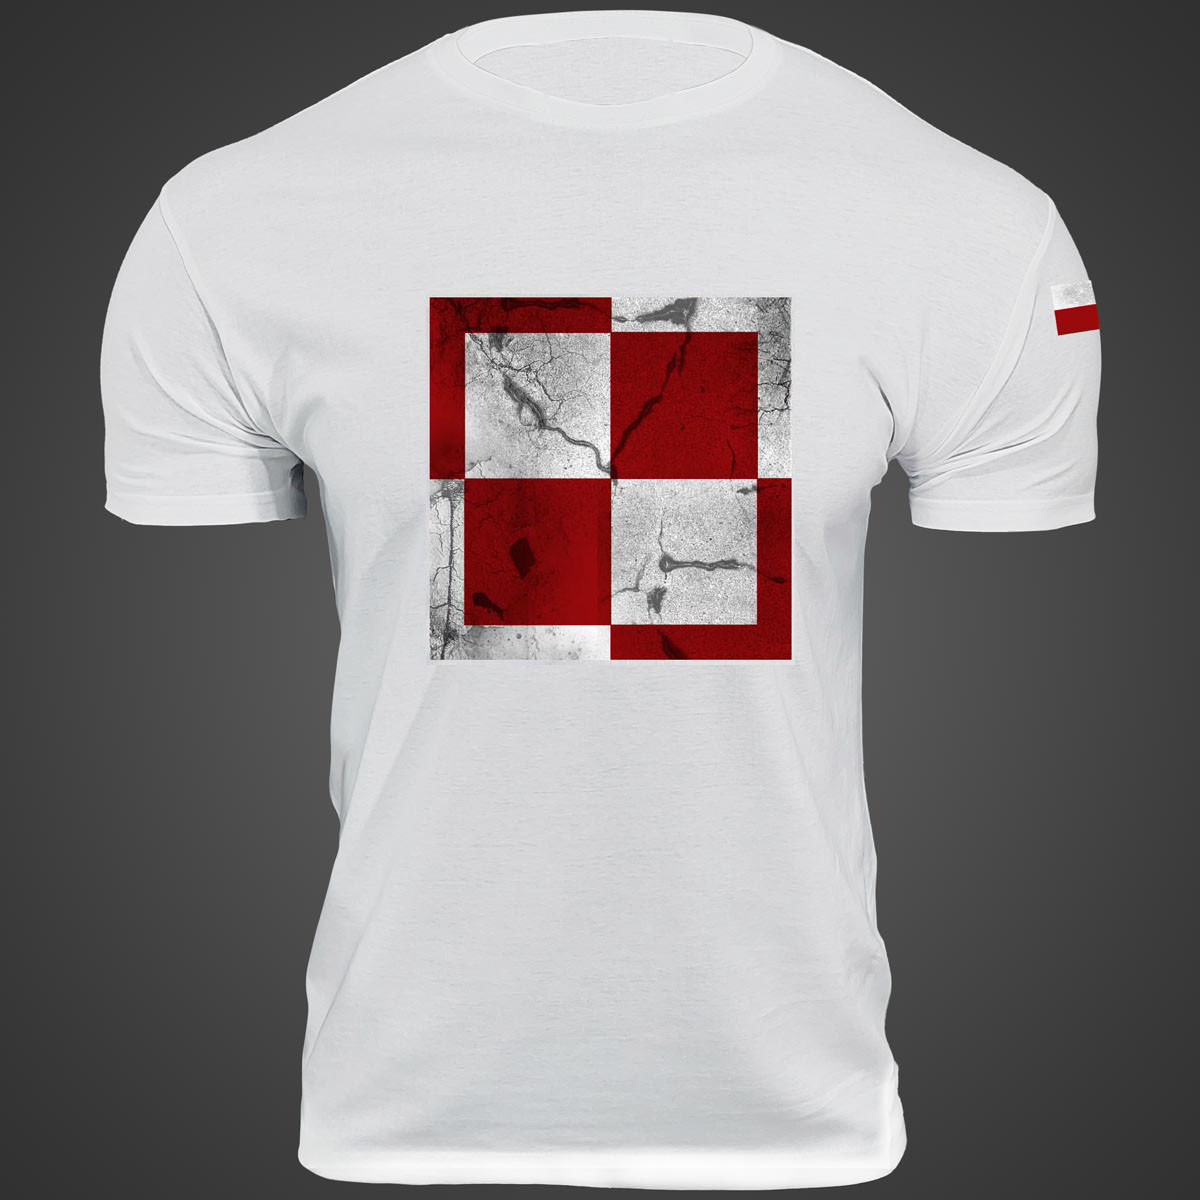 Koszulka lotnicza - koszulka patriotyczna Szachownica lotnicza męska t-shirt biała